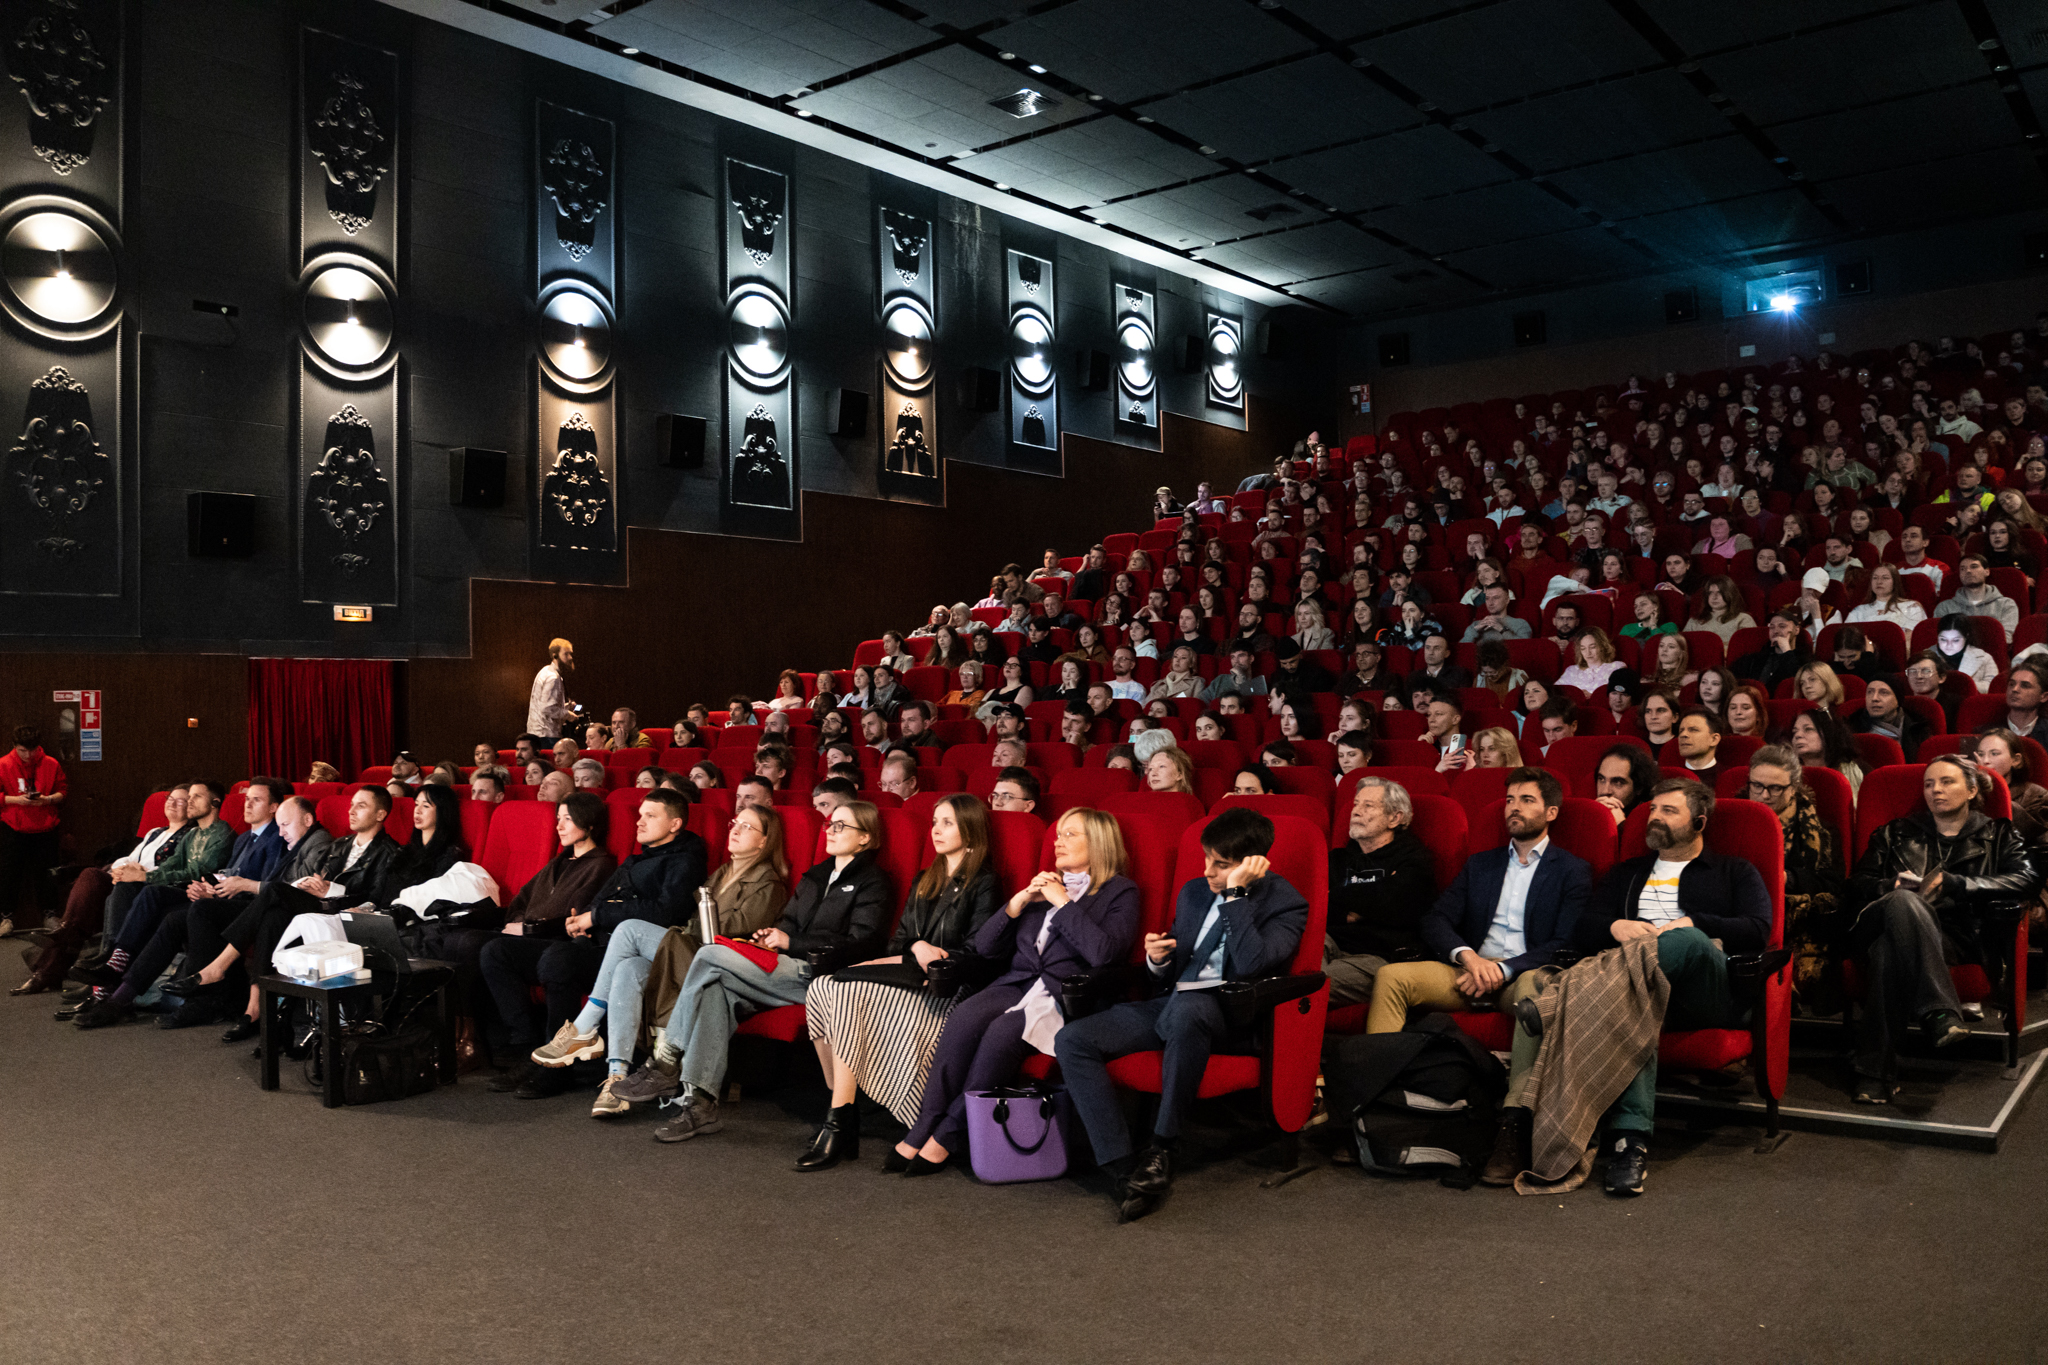 Напередодні фестиваль квір-кіно SUNNY BUNNY відкрився в Києві, в кінотеатрі «Жовтень» з аншлагом